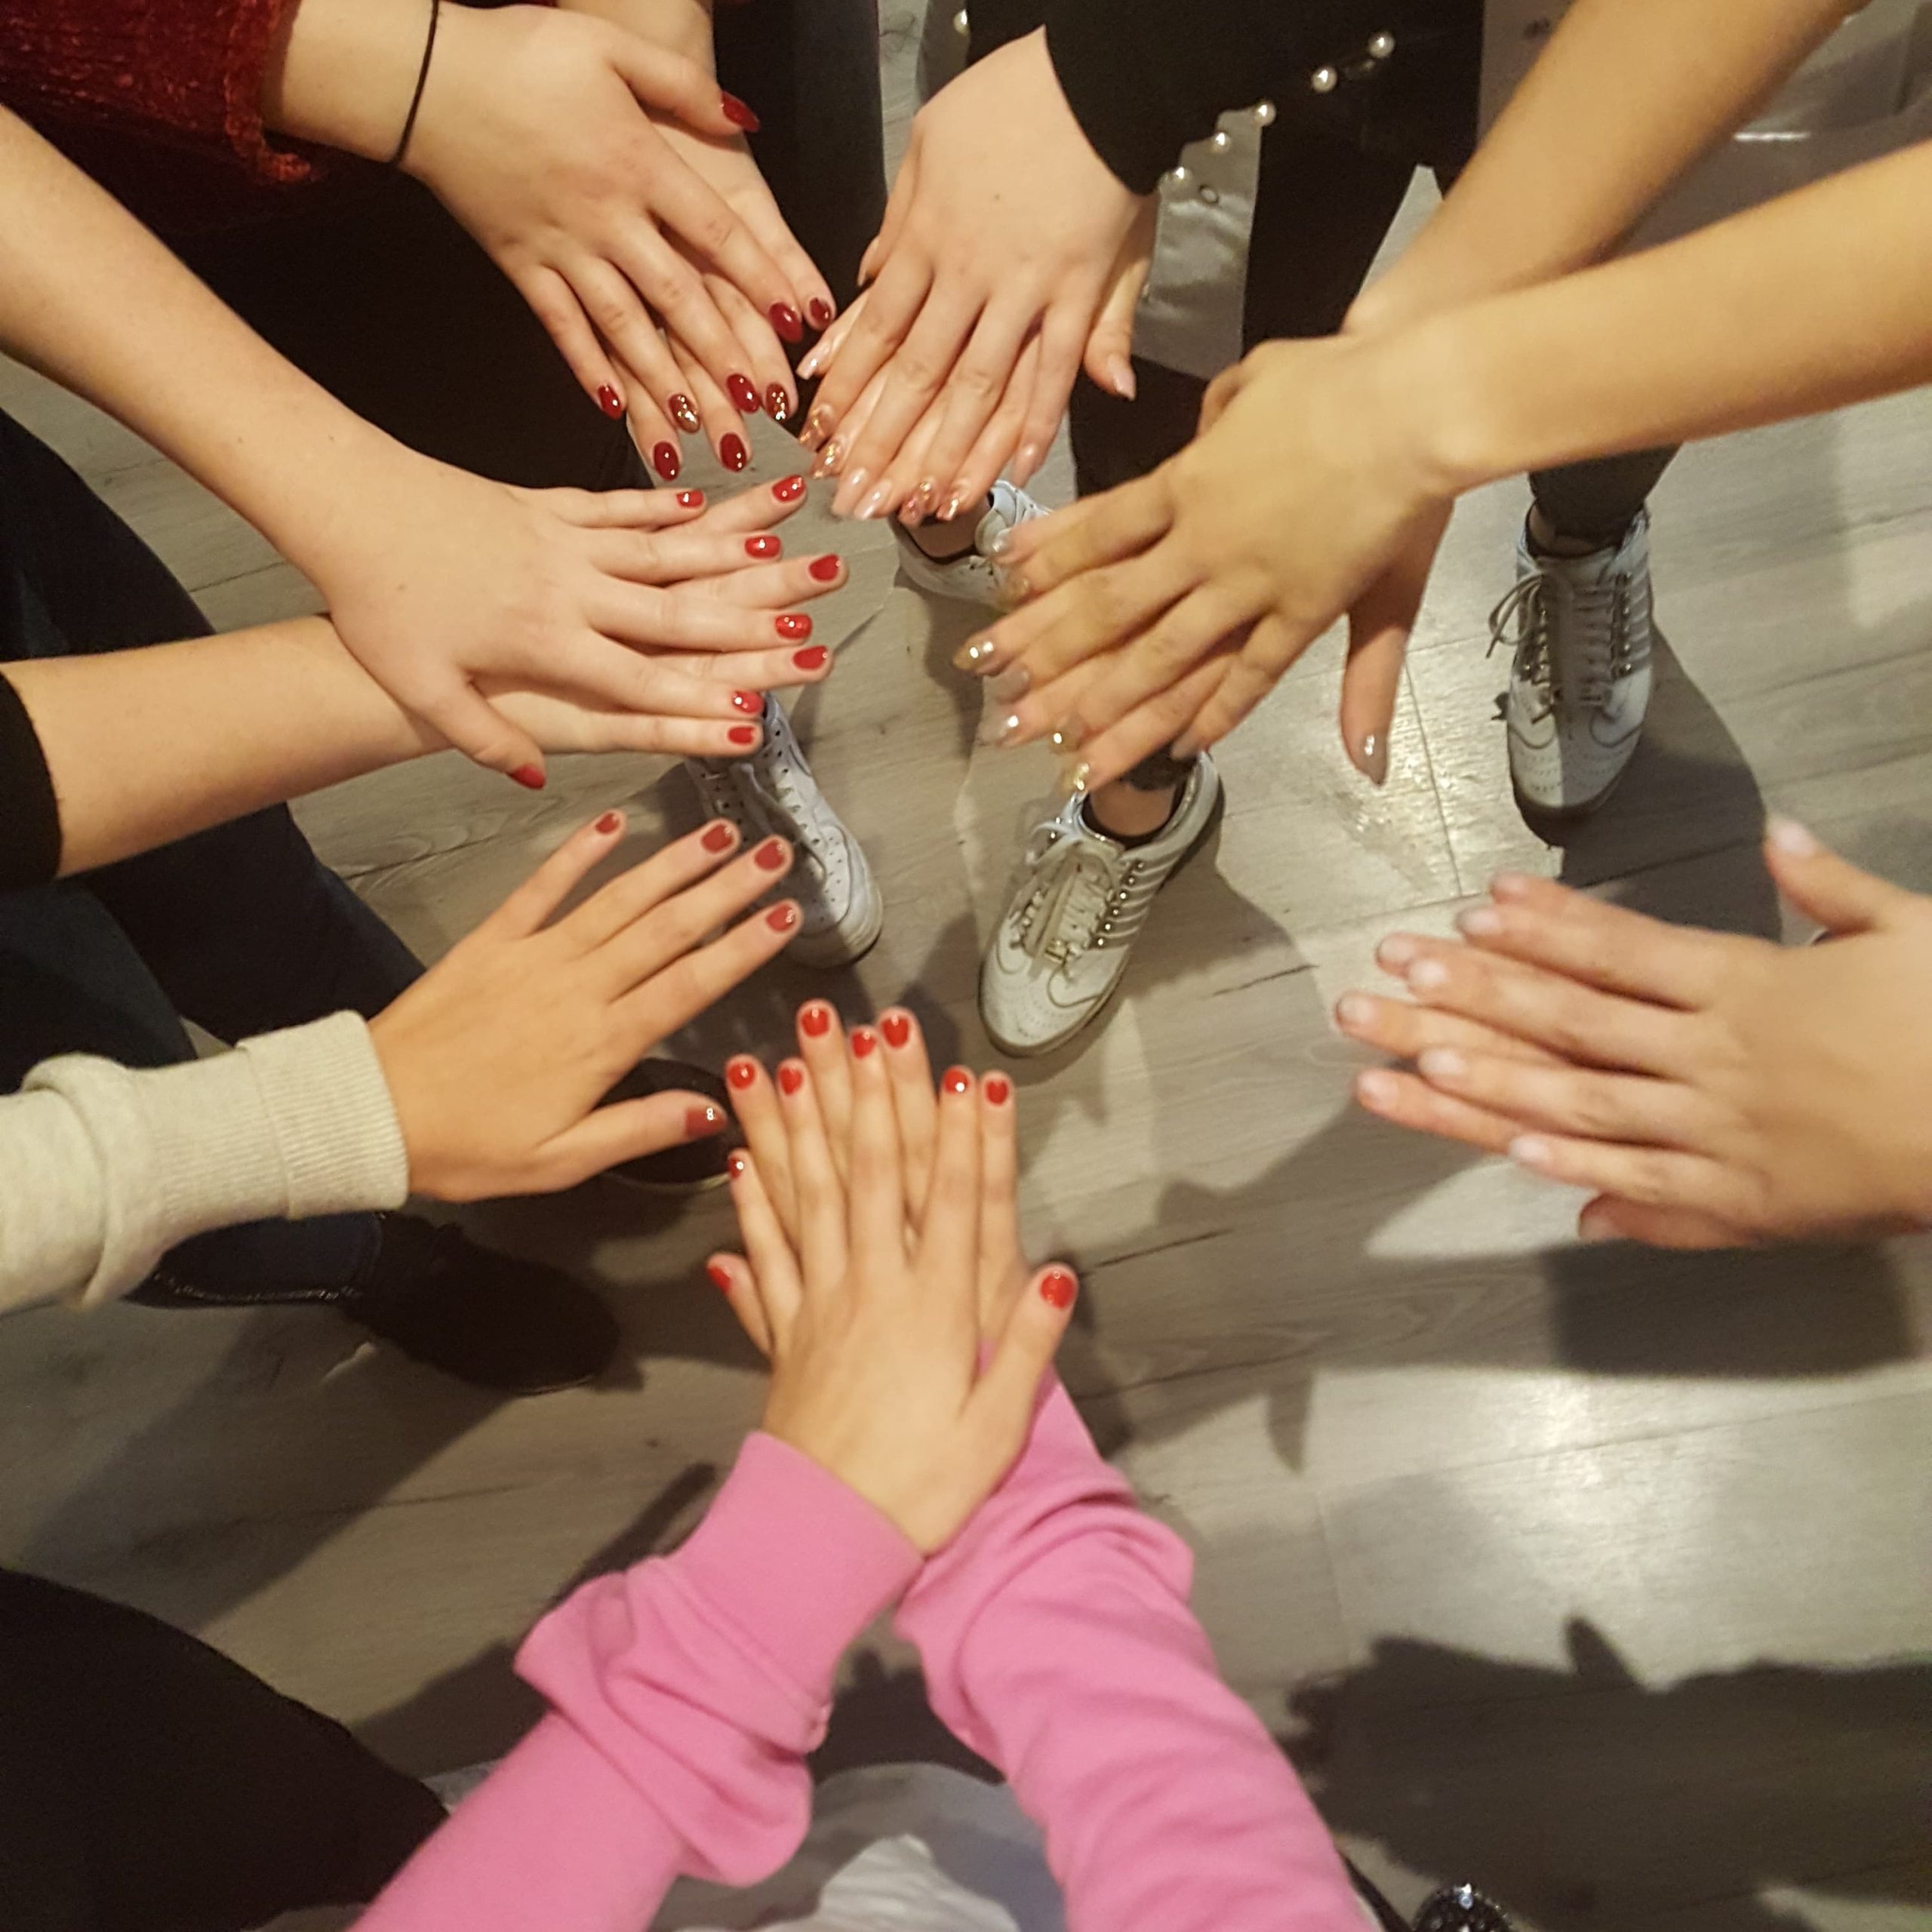 gropes foto van vrouwen die hun armen uitsteken en de handen op elkaar leggen met mooi gelakt gelnagellak op hun nagels van de workshop gel lac